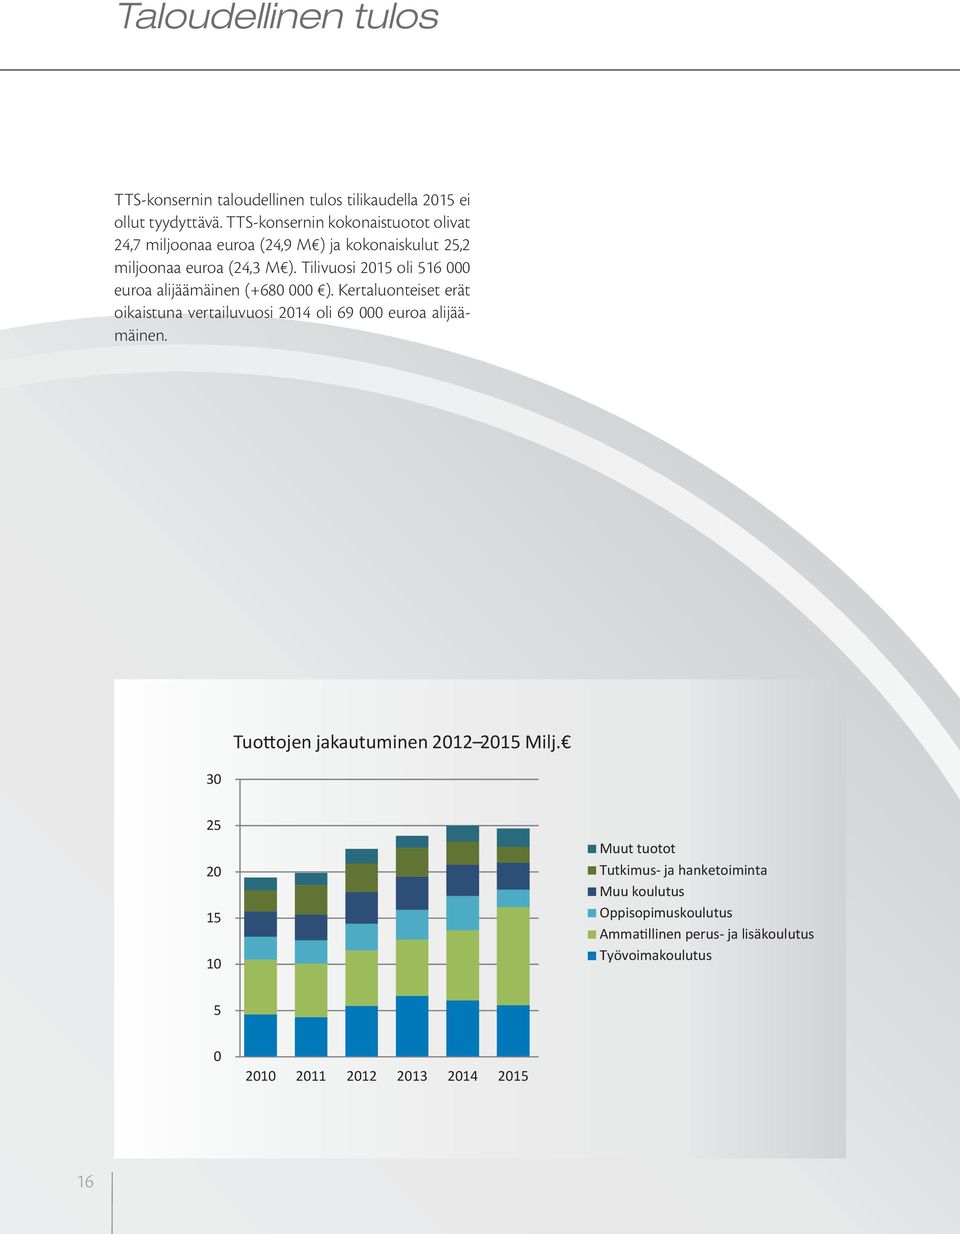 Tilivuosi 2015 oli 516 000 euroa alijäämäinen (+680 000 ). Kertaluonteiset erät oikaistuna vertailuvuosi 2014 oli 69 000 euroa alijäämäinen.